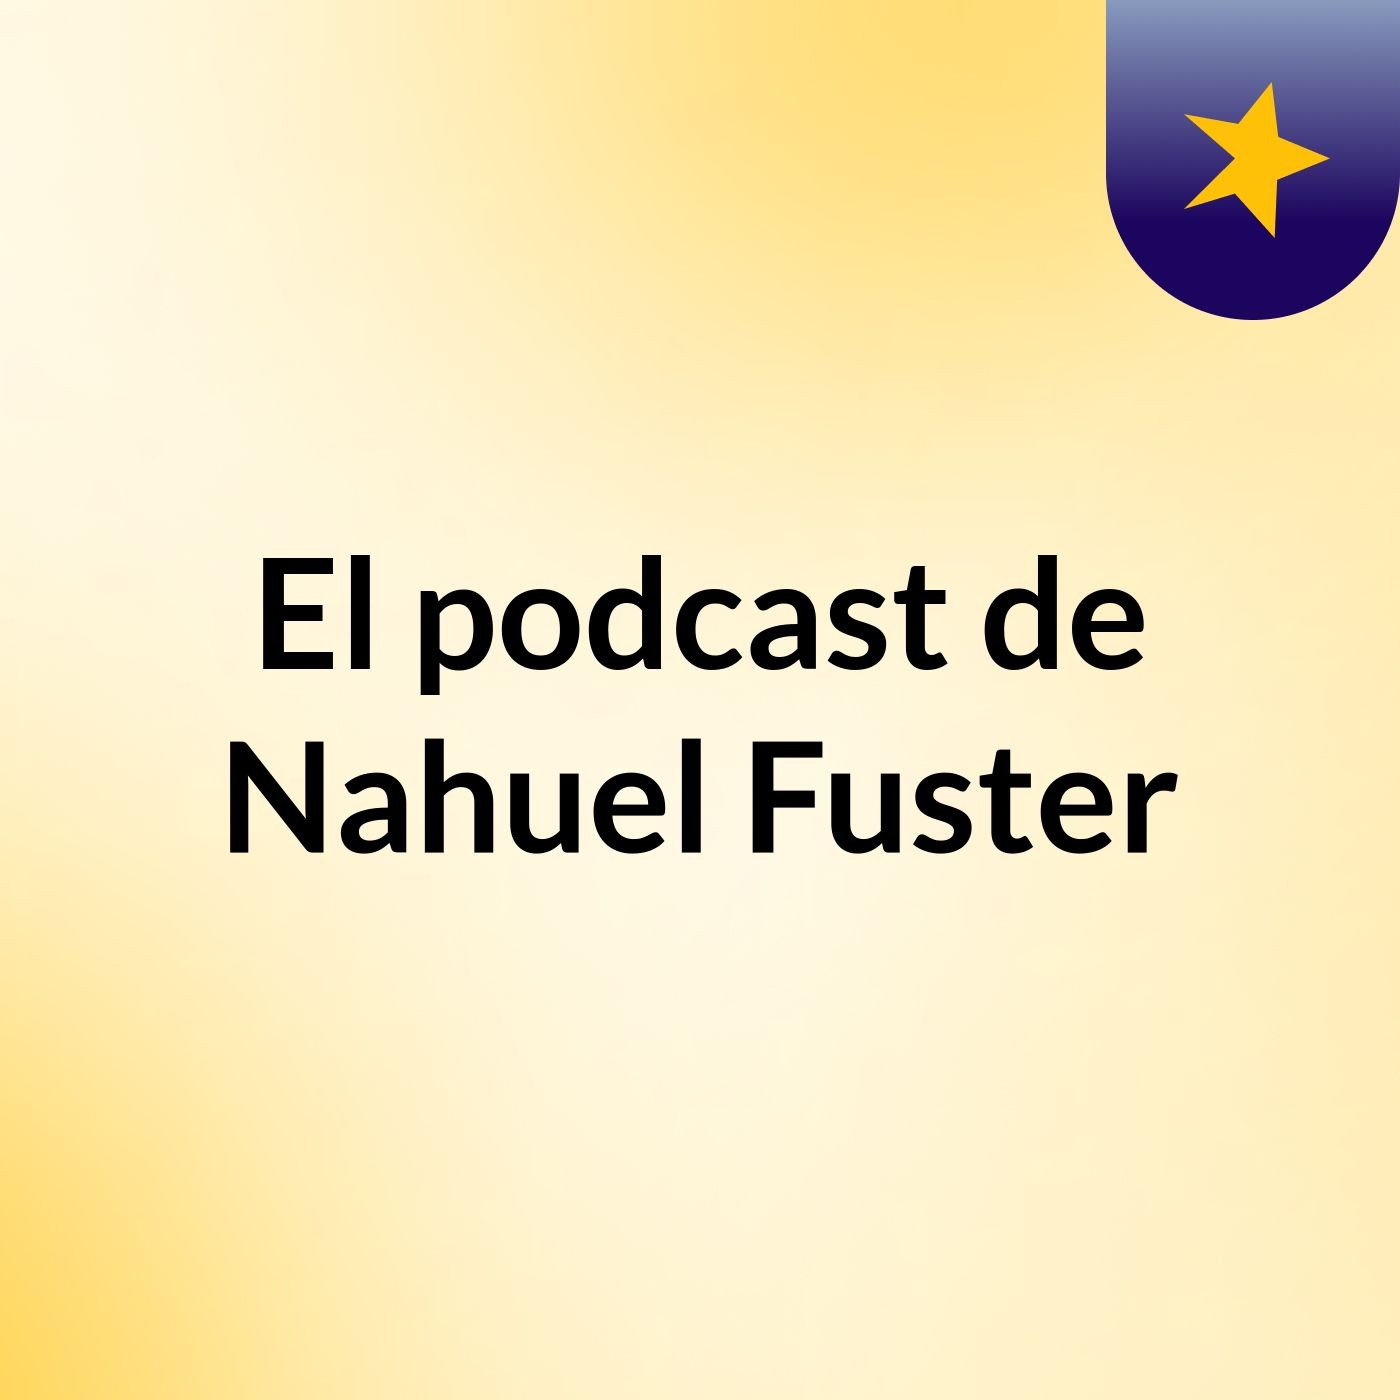 El podcast de Nahuel Fuster